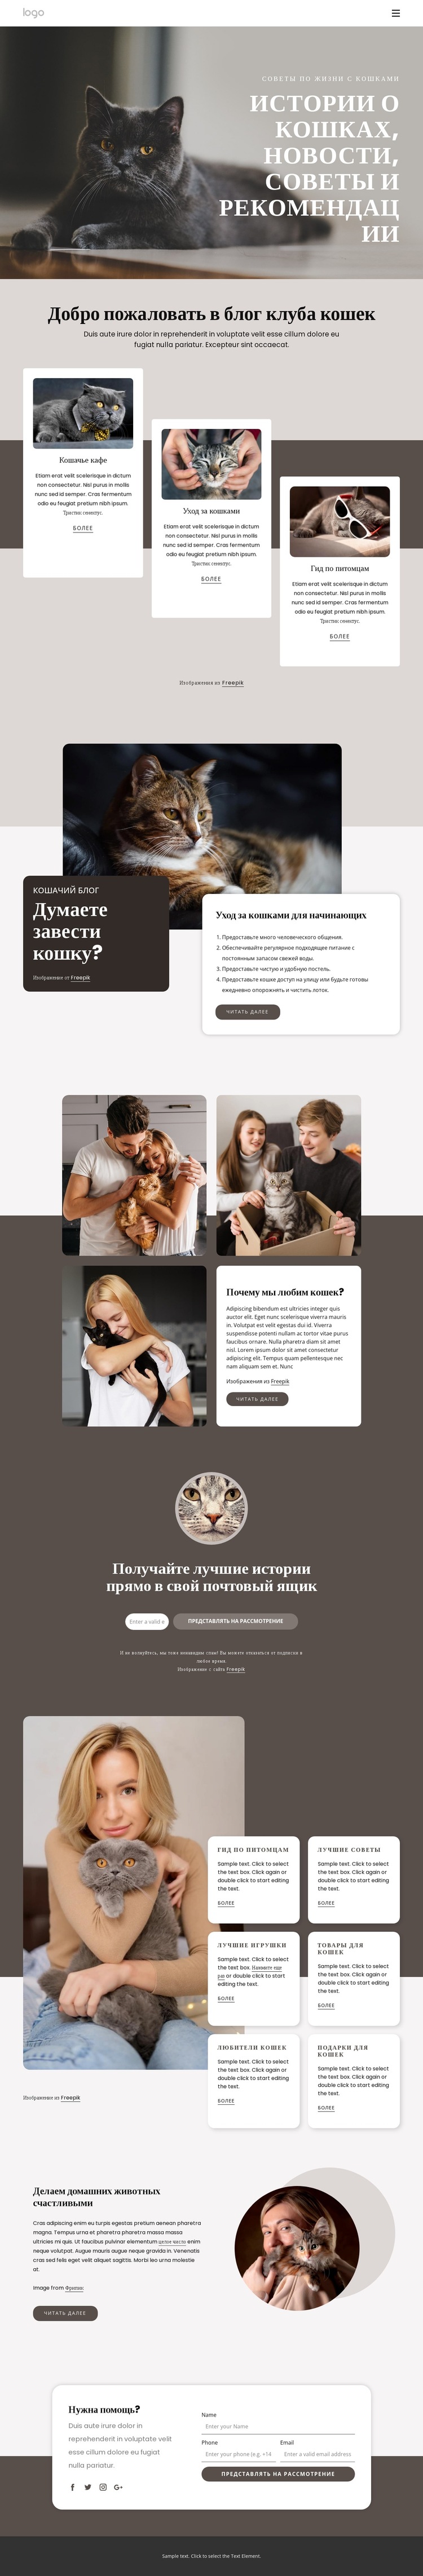 Истории о кошках, советы и рекомендации Шаблон веб-сайта